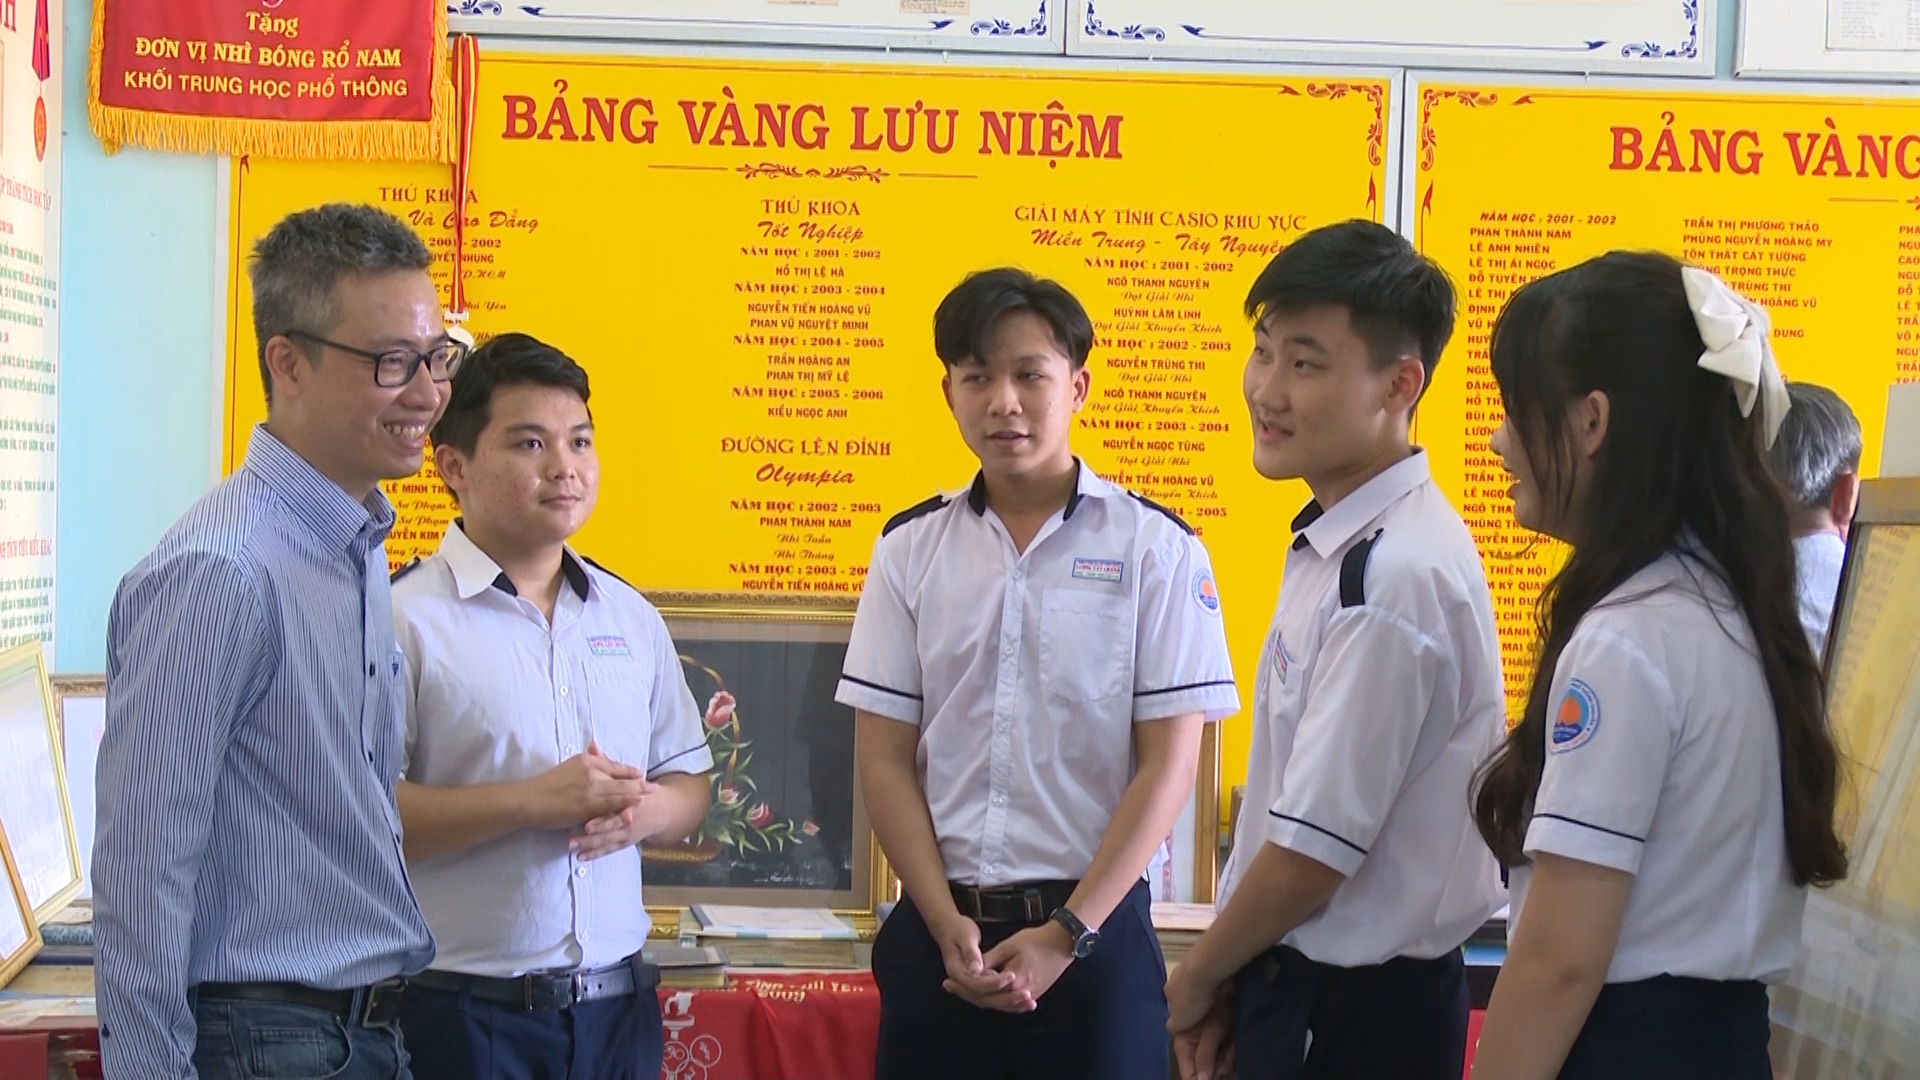  Giáo sư Phan Thành Nam lan tỏa niềm đam mê Toán học